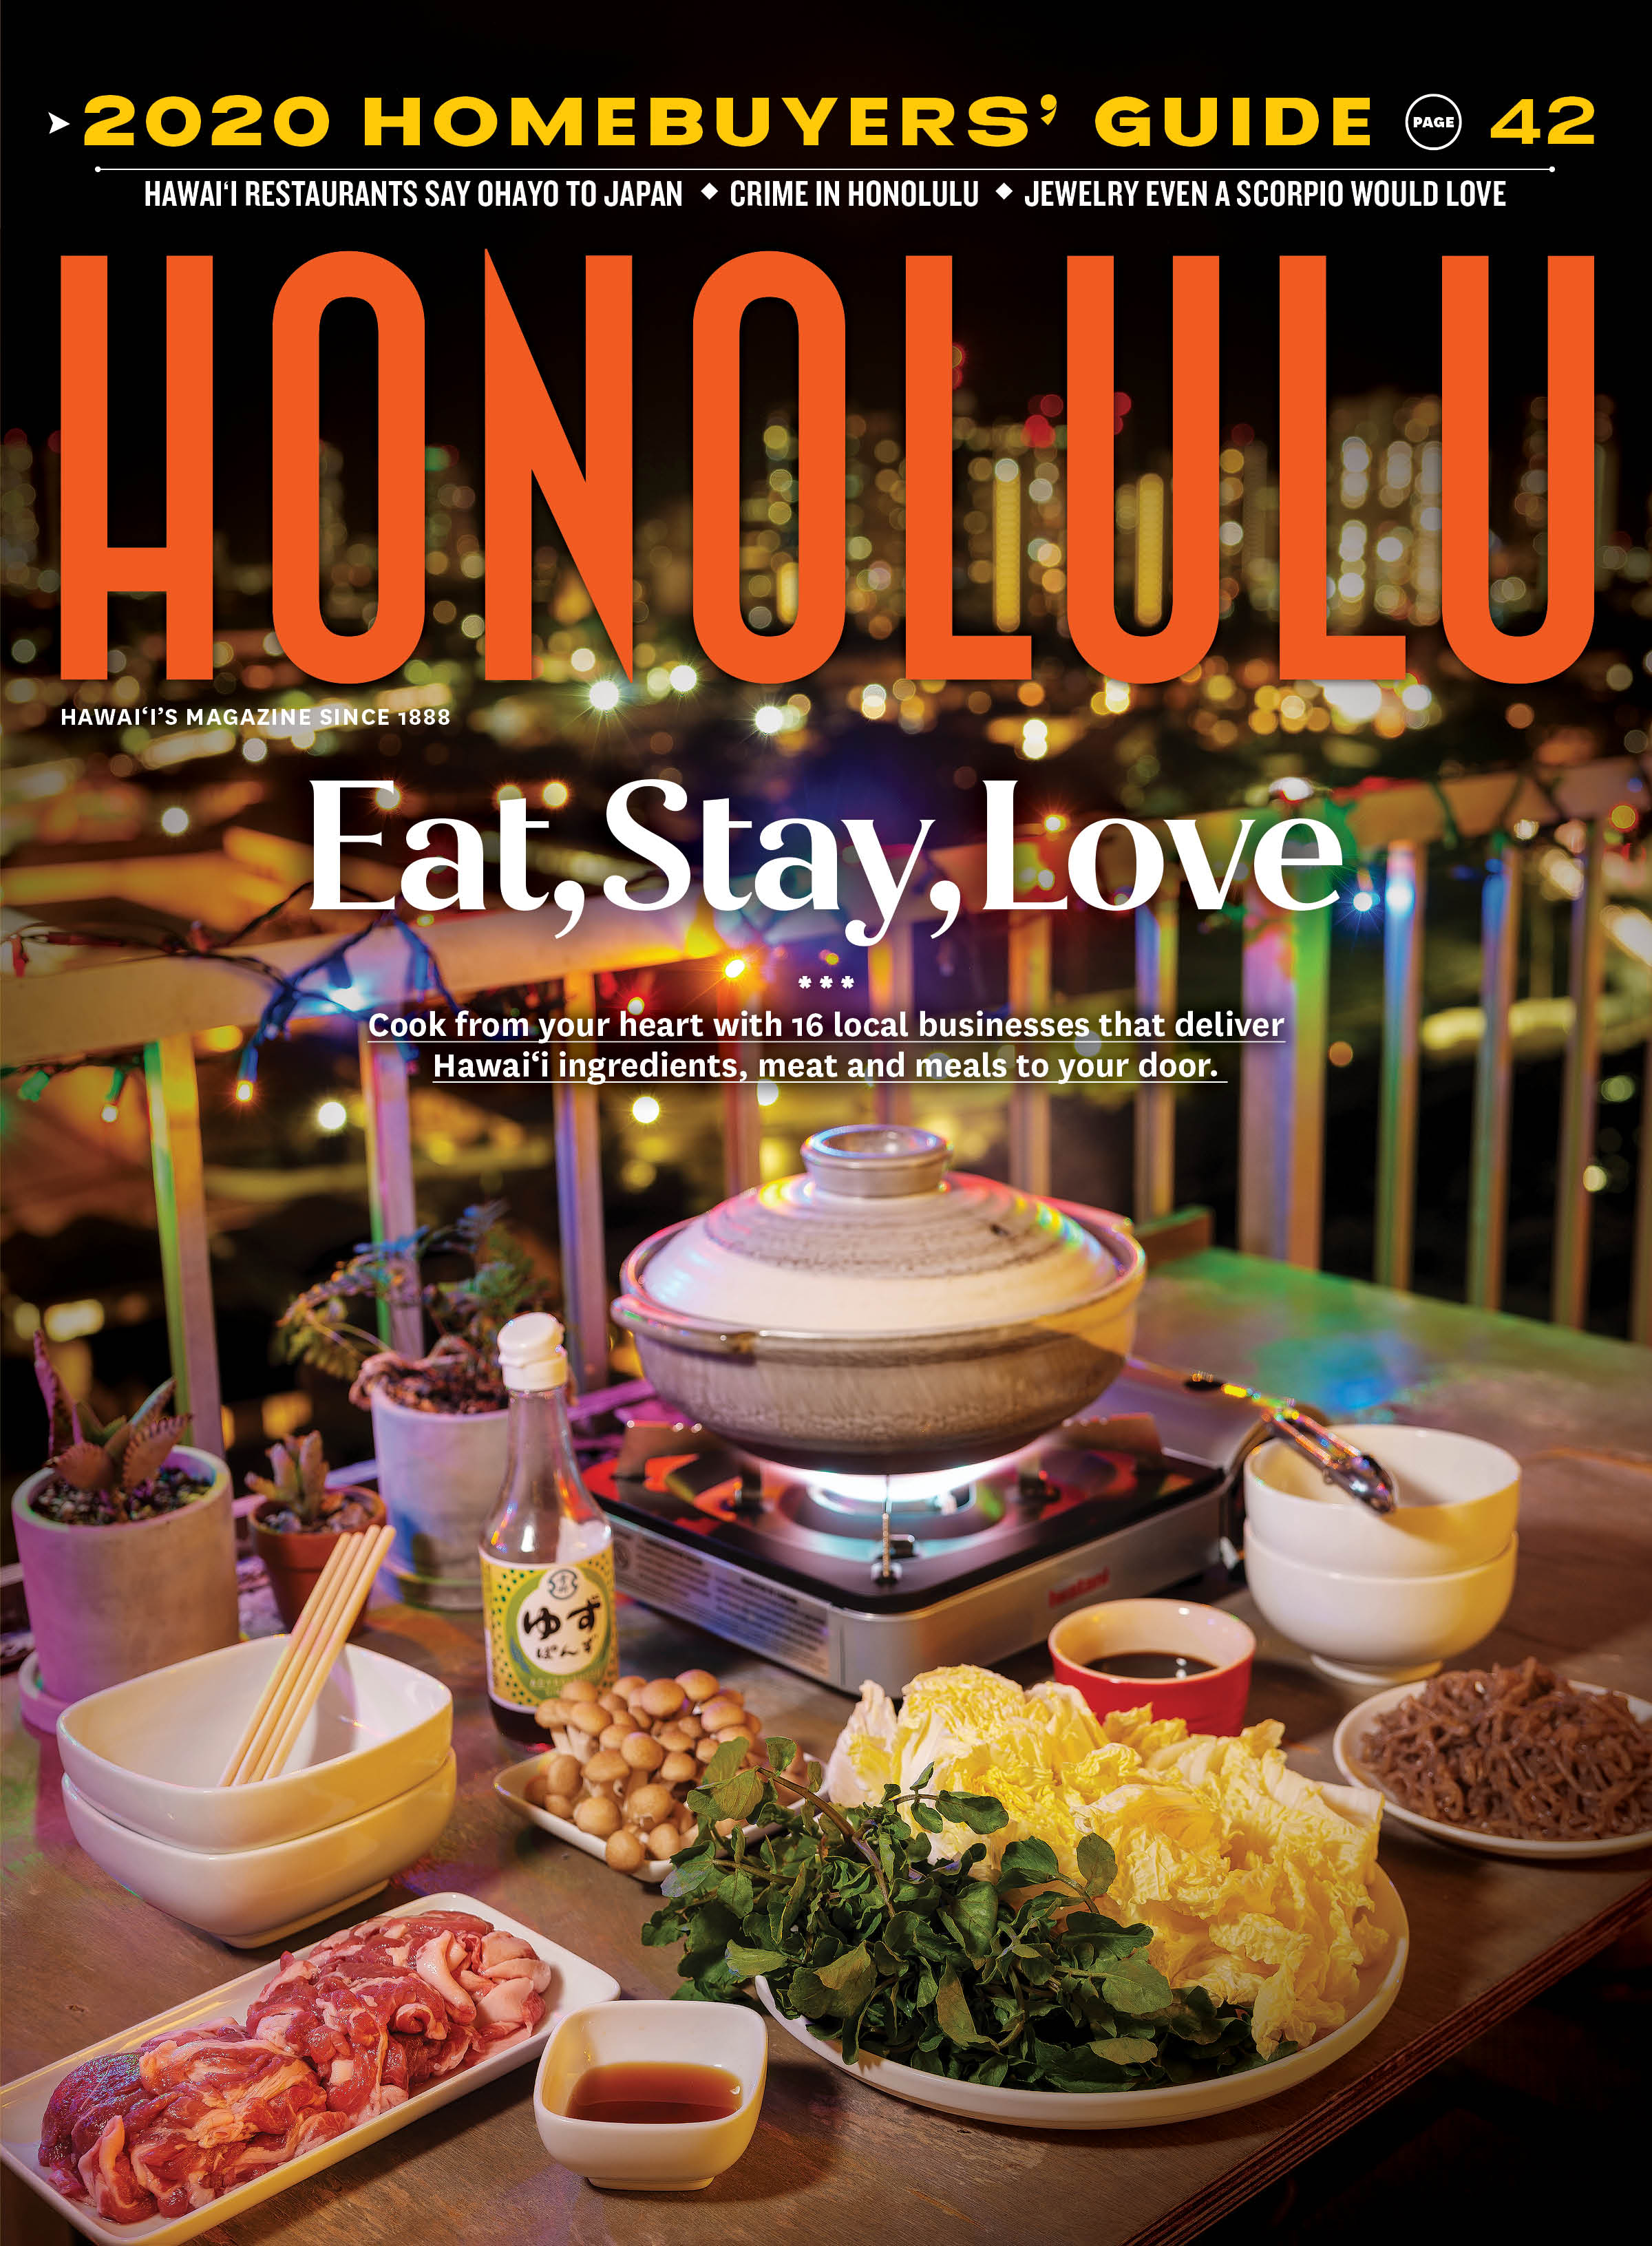 HONOLULU Magazine May 2020 Honolulu Magazine